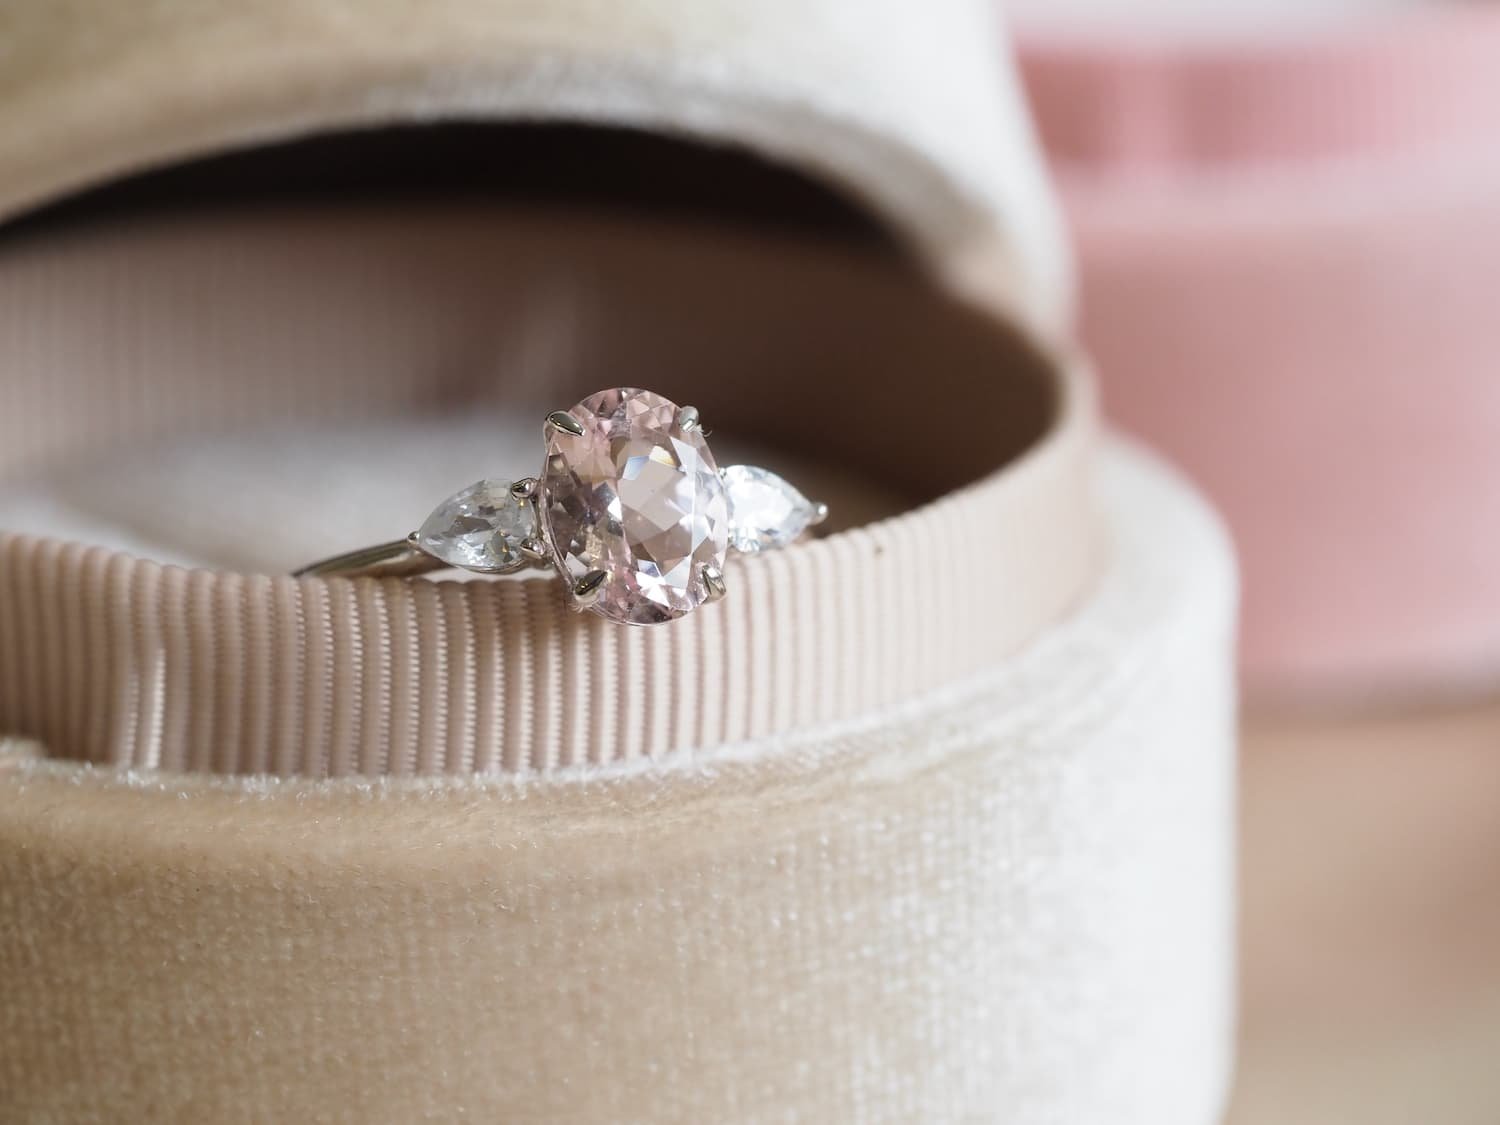 Lisa Morganite engagement rings with pear diamonds in velvet box